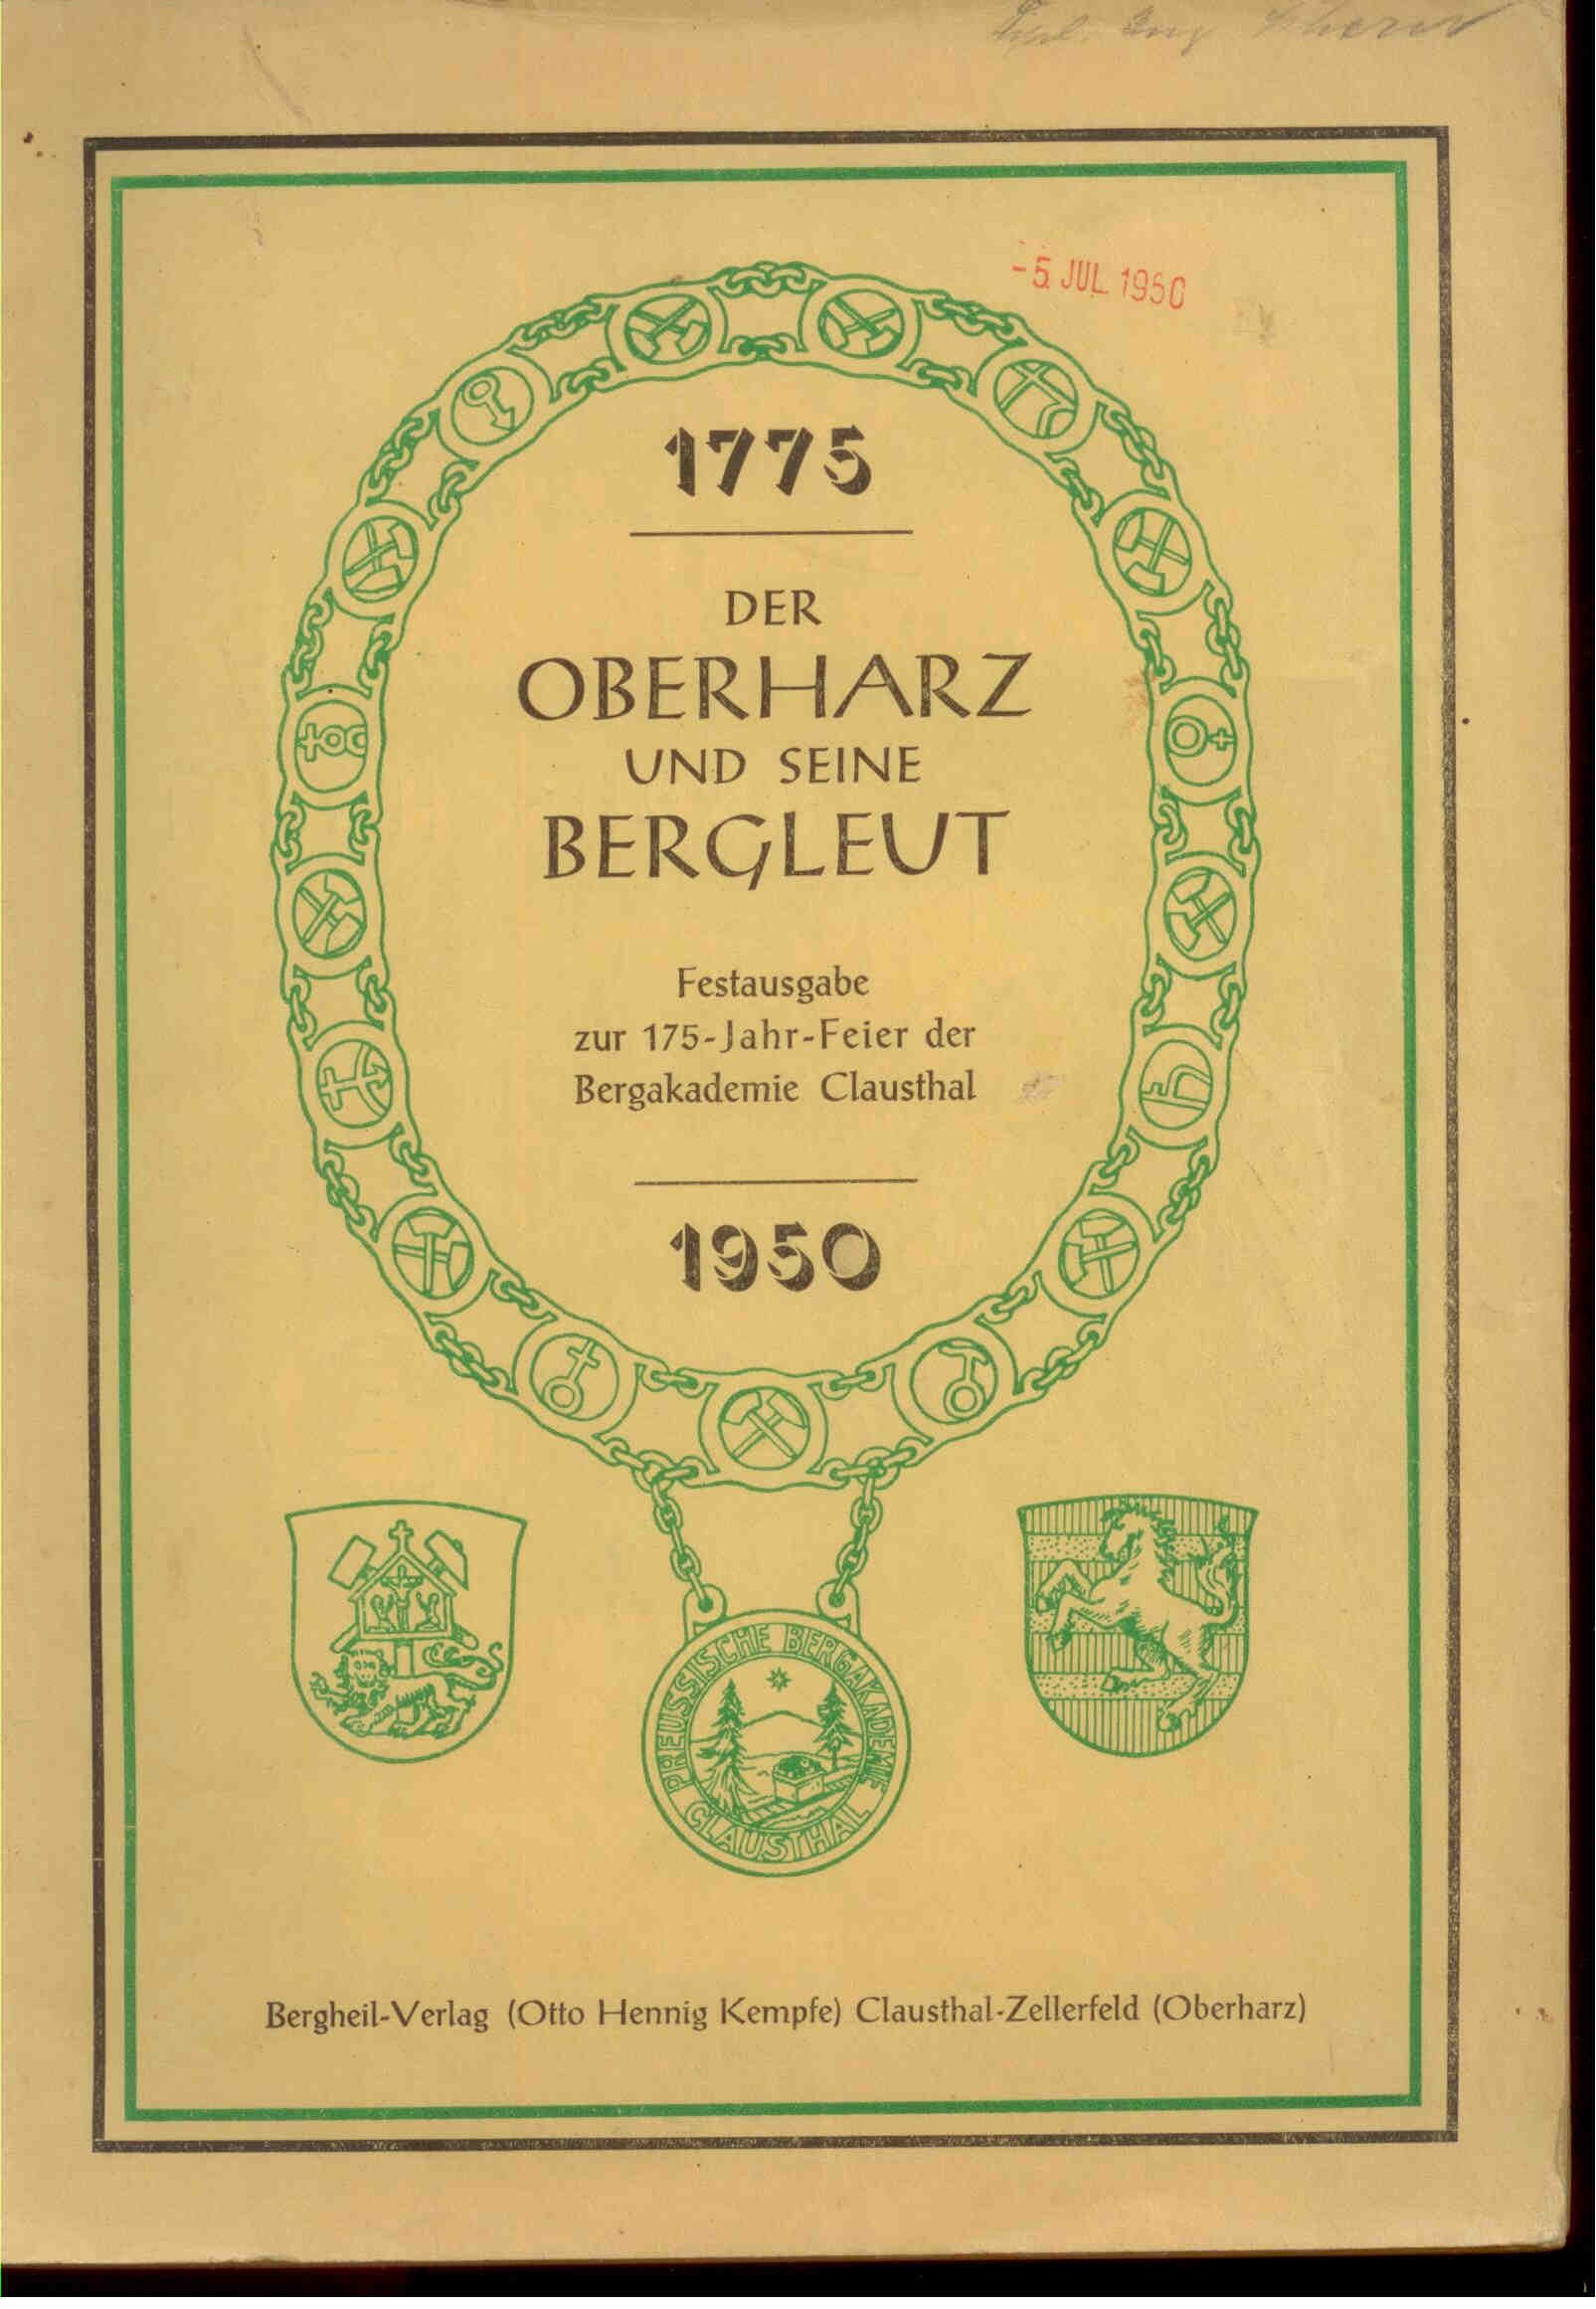 Der Oberharz und seine Bergleut. 1775-1950. 